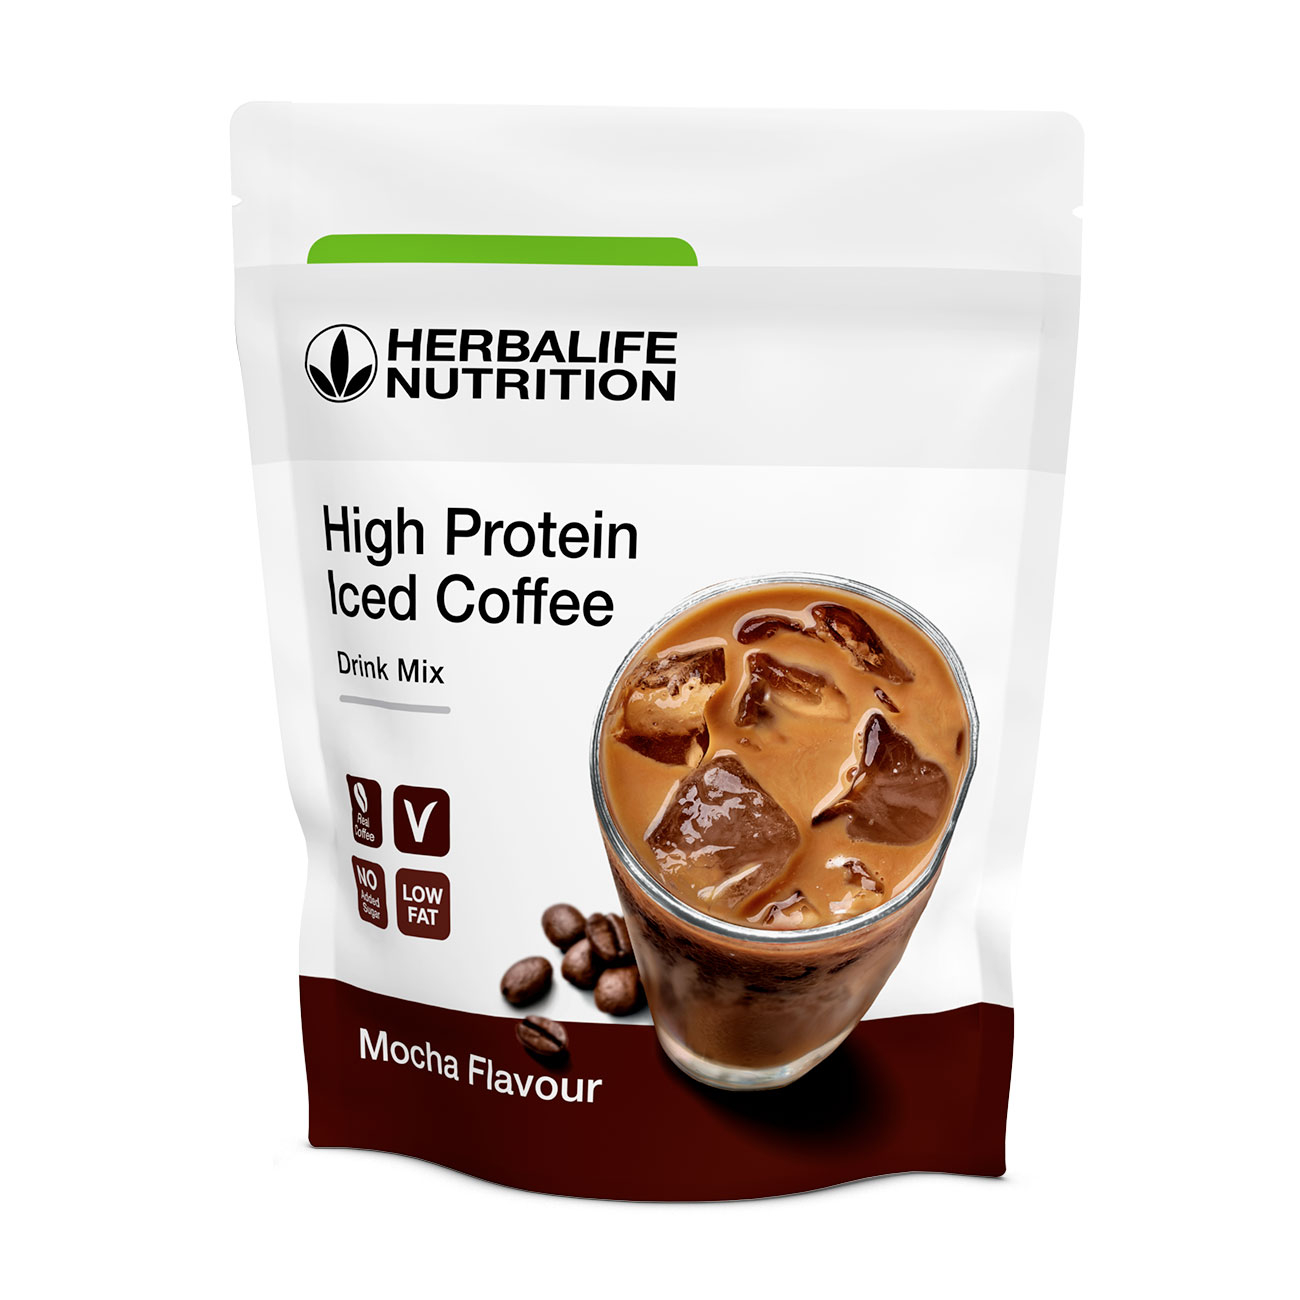 High Protein Iced Coffee café frappé protéiné mocha product shot